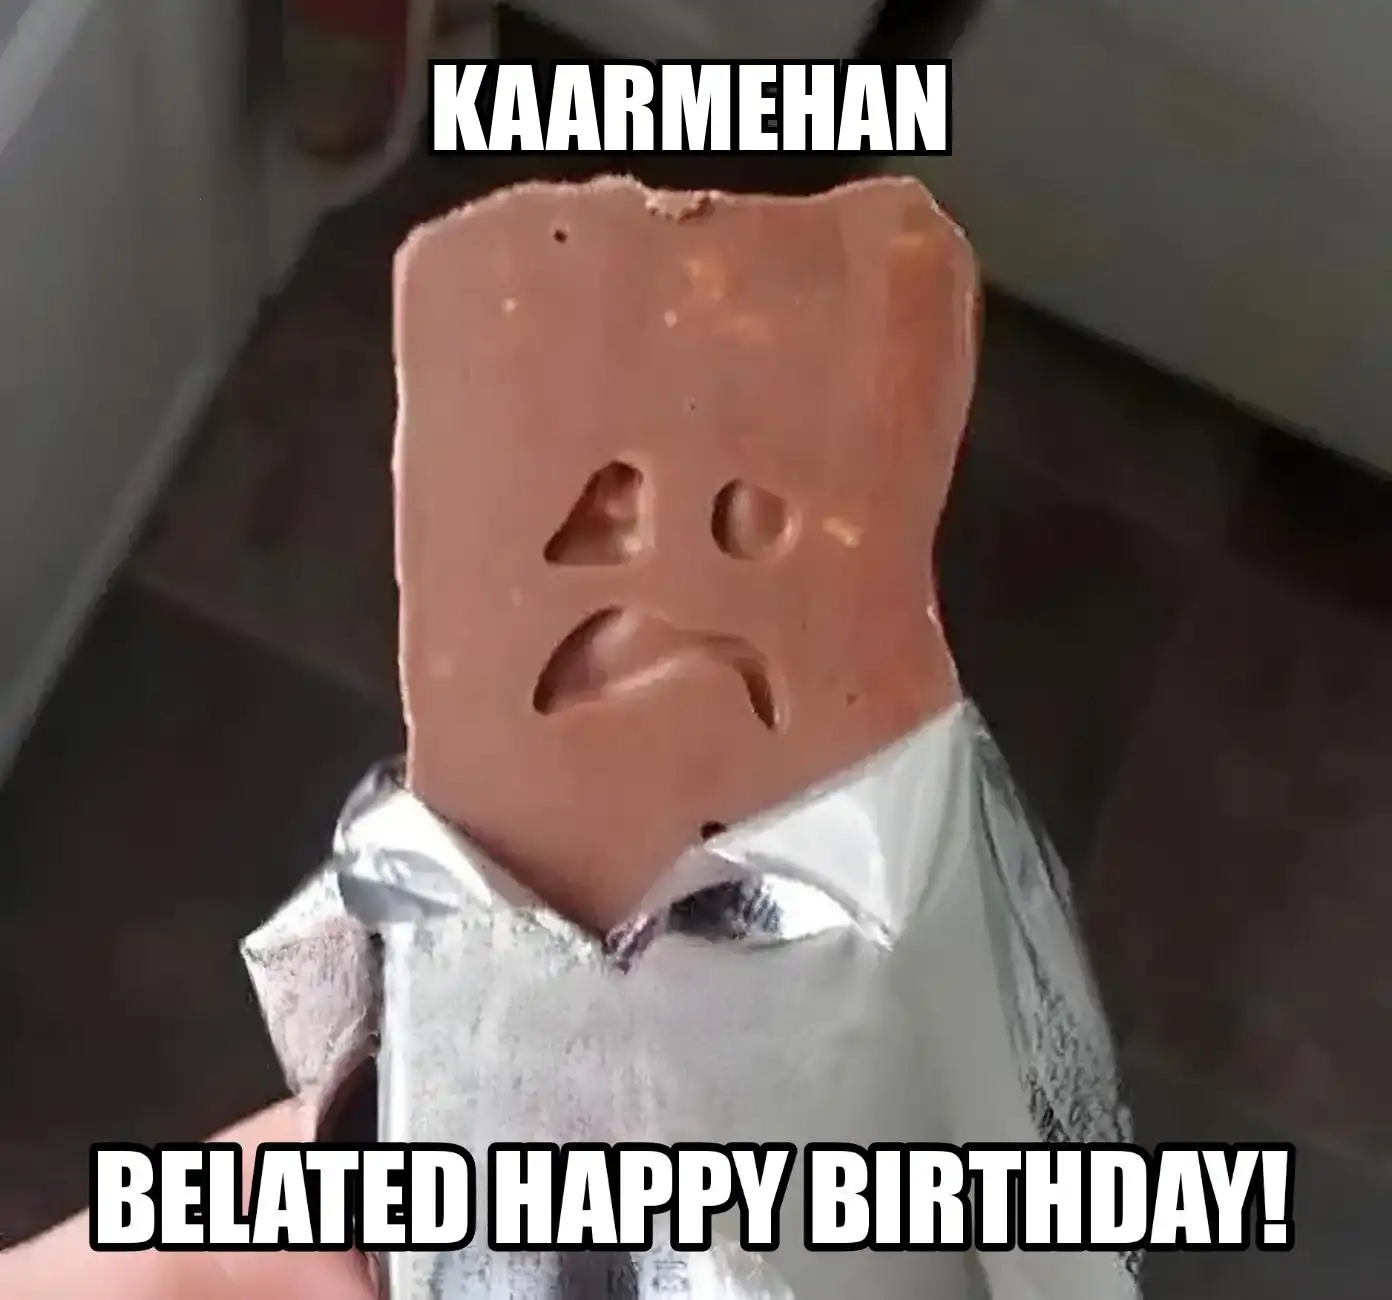 Happy Birthday Kaarmehan Belated Happy Birthday Meme